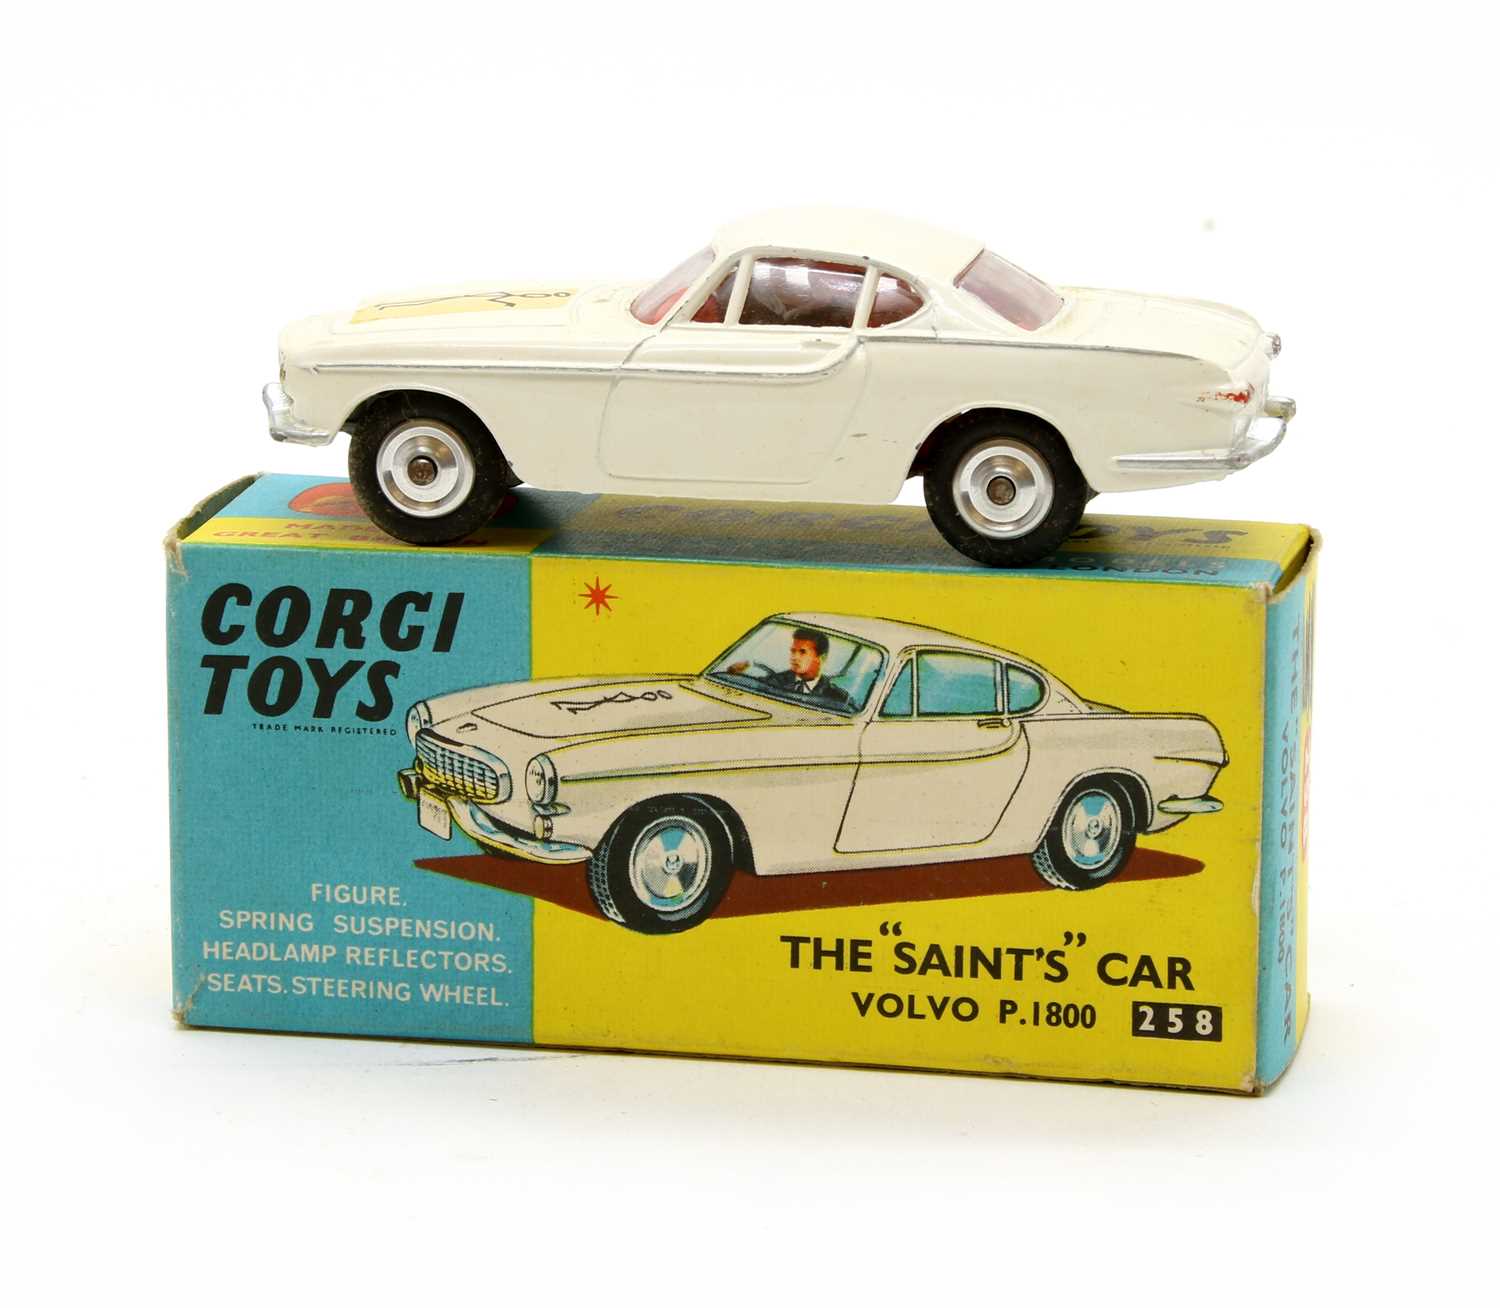 Lot 78 - Corgi Toys The Saint's Car Volvo P. 1800